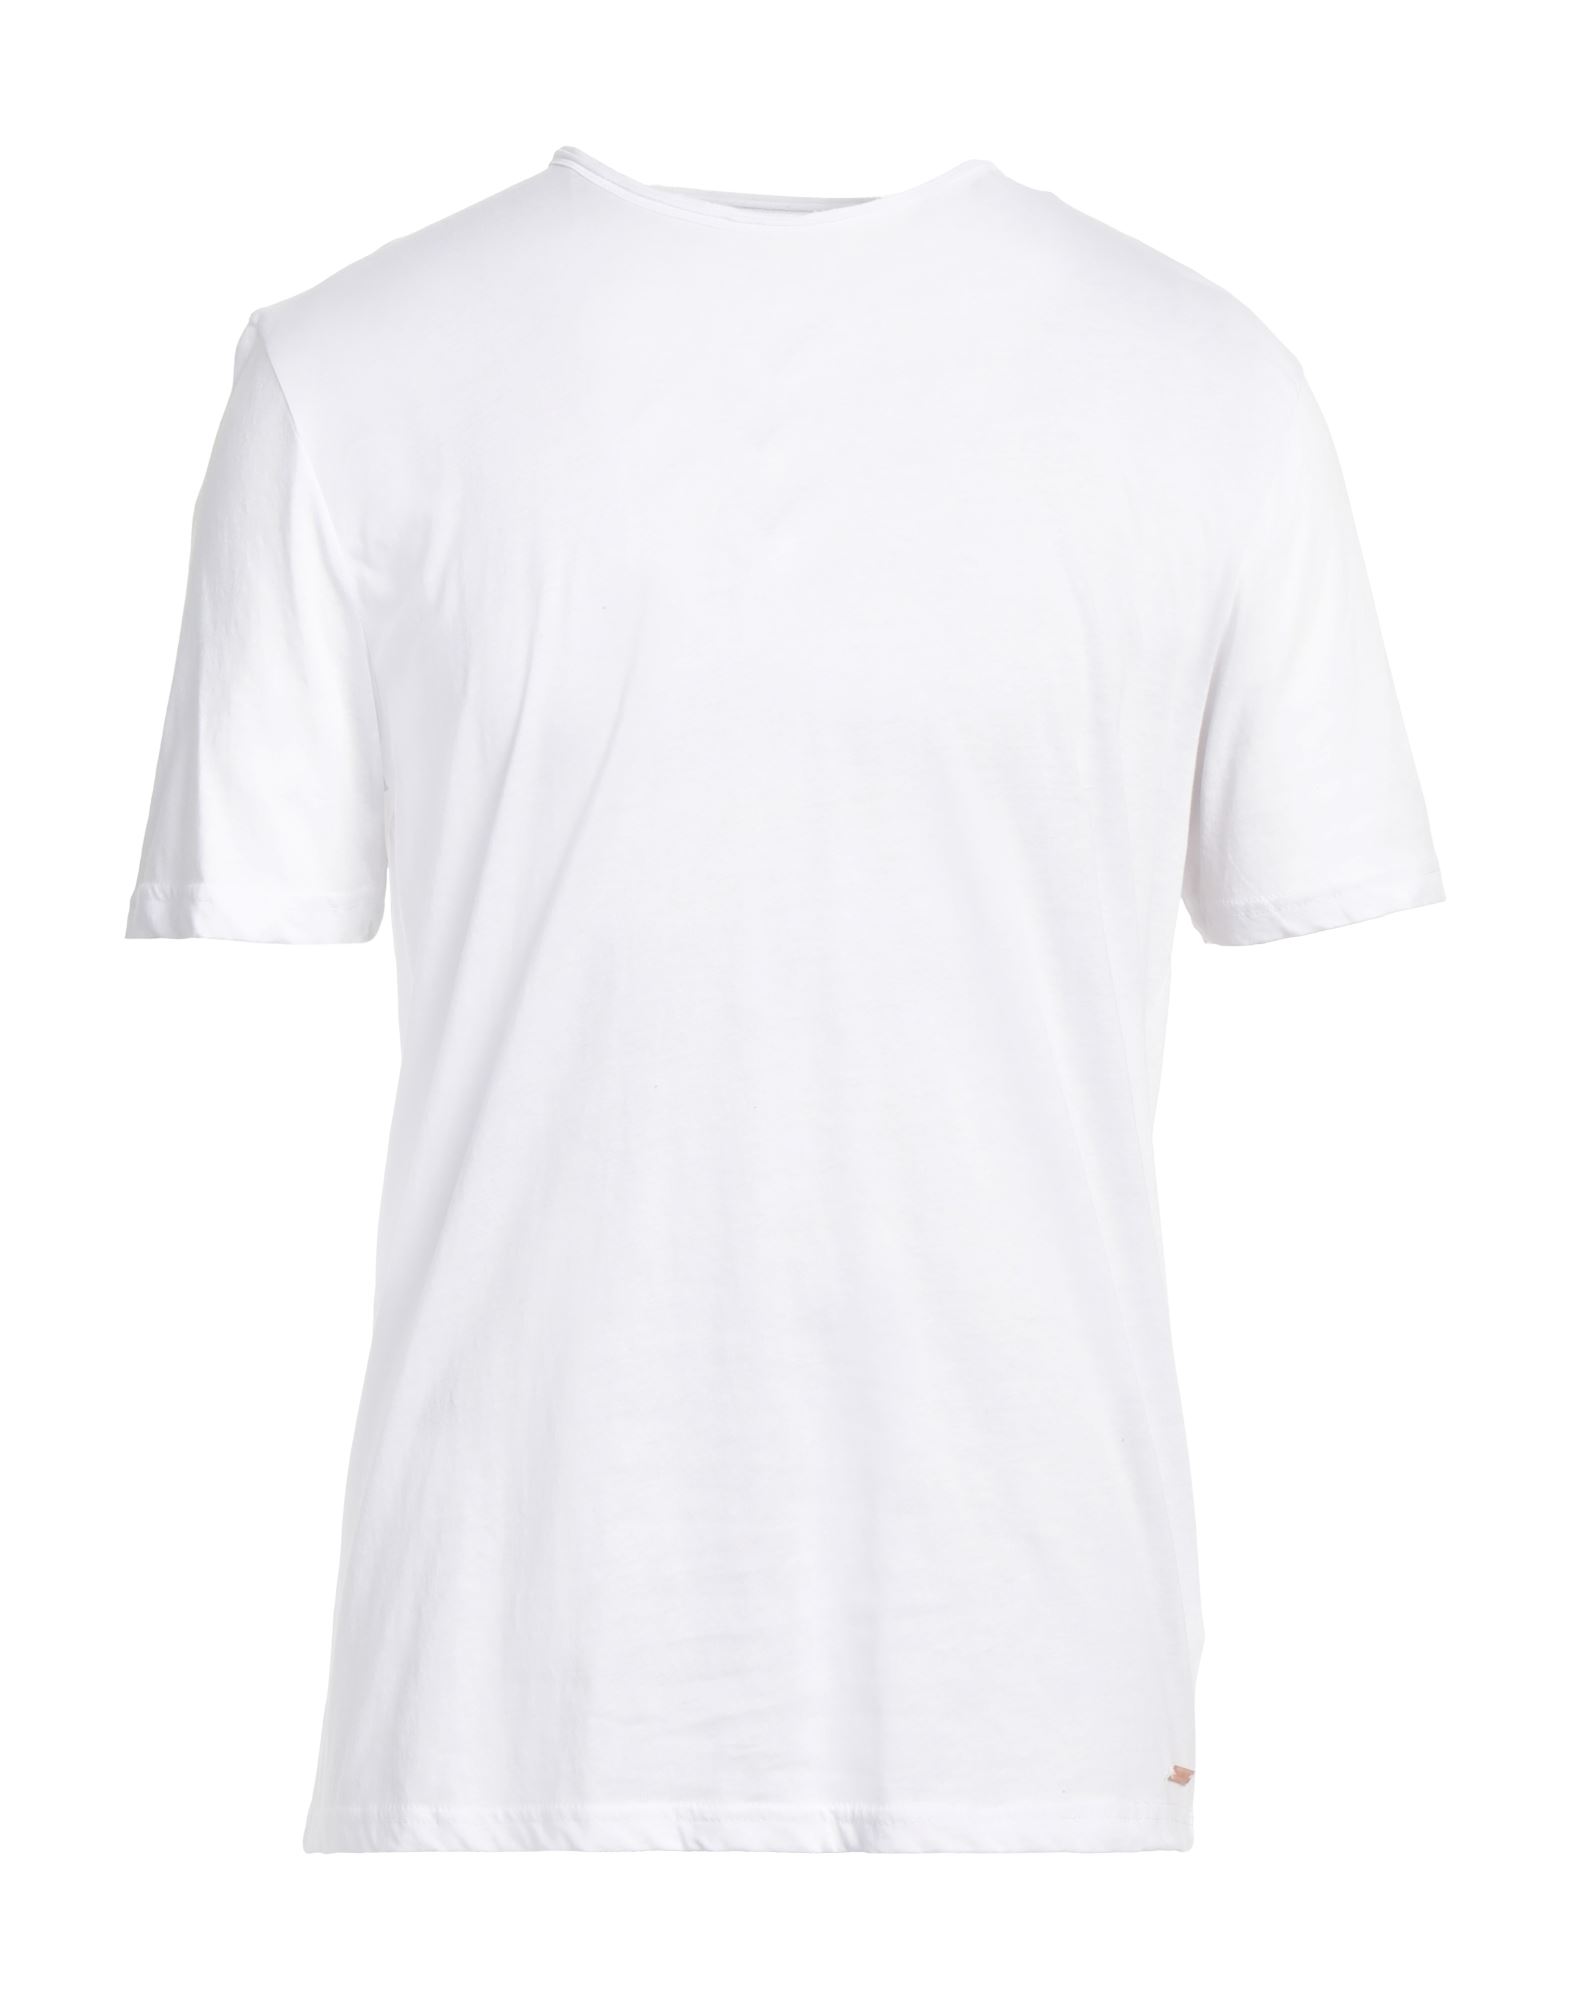 Shop Markup Man T-shirt White Size Xxl Cotton